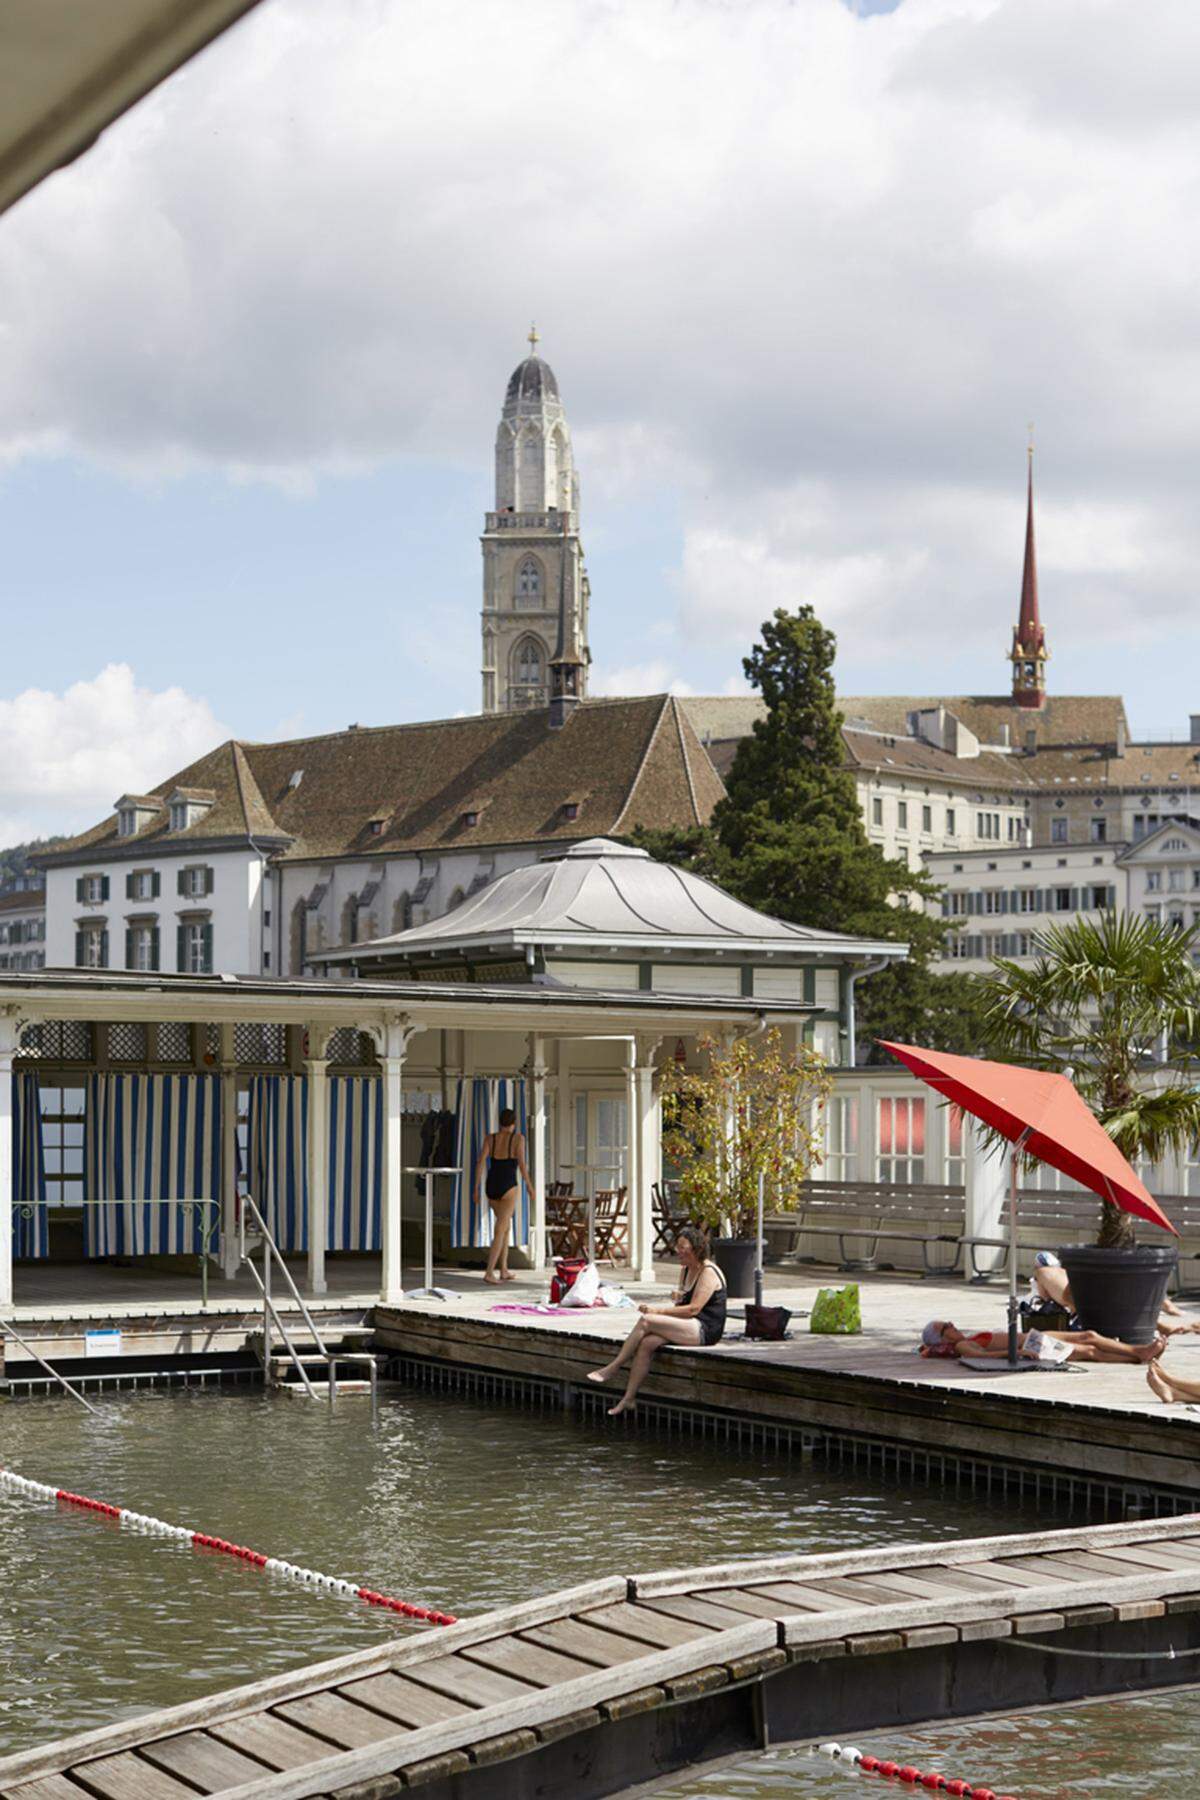 Am Stadthausquai in Zürich liegt das Frauenbad, von den Einheimischen auch "Frauenbadi" genannt. Bis 1836 war das öffentliche Baden in der Stadt nämlich verboten und als es endlich erlaubt war, wurde ein "Badhaus für Frauenzimmer" eingerichtet. Es steht unter Denkmalschutz.